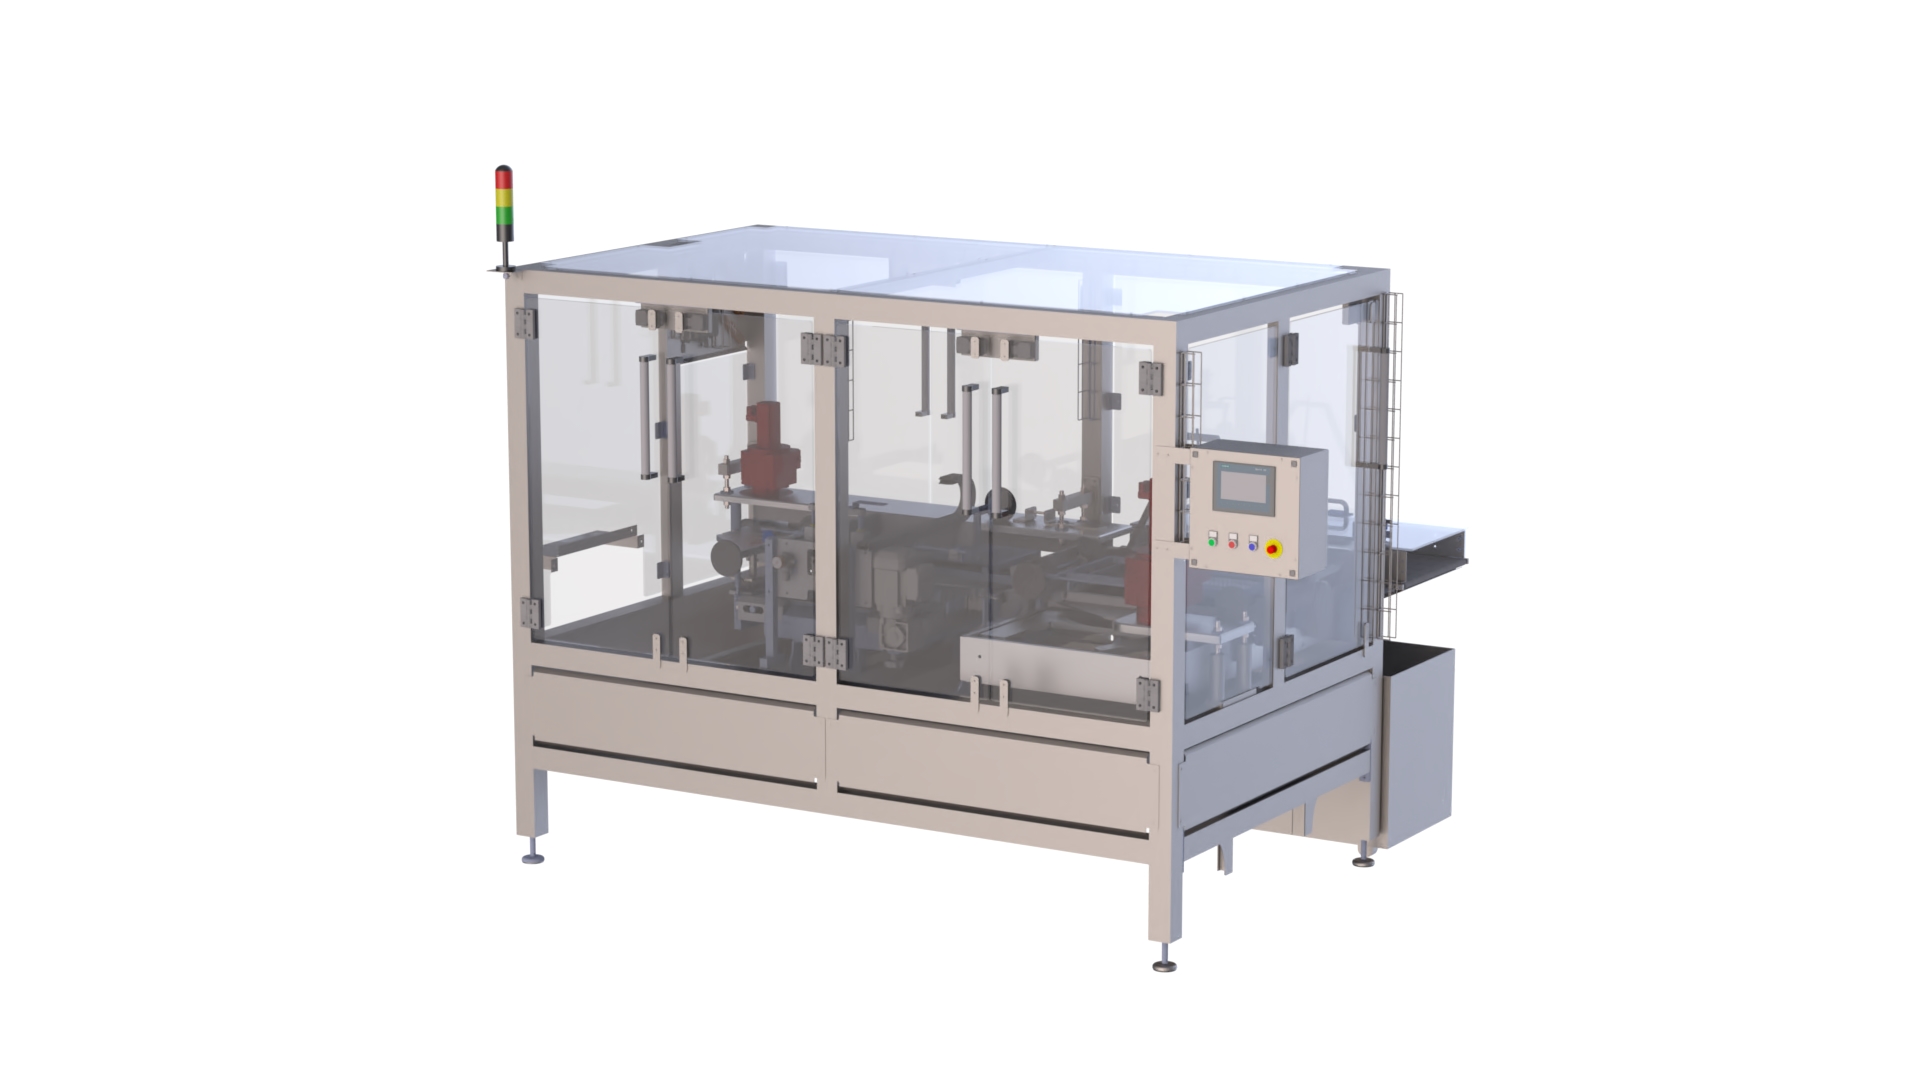 mexbert gmbh - Waffelschneidmaschine für das automatisierte Schneiden von gestapelten Waffelblöcken in der Lebensmittelindustrie.